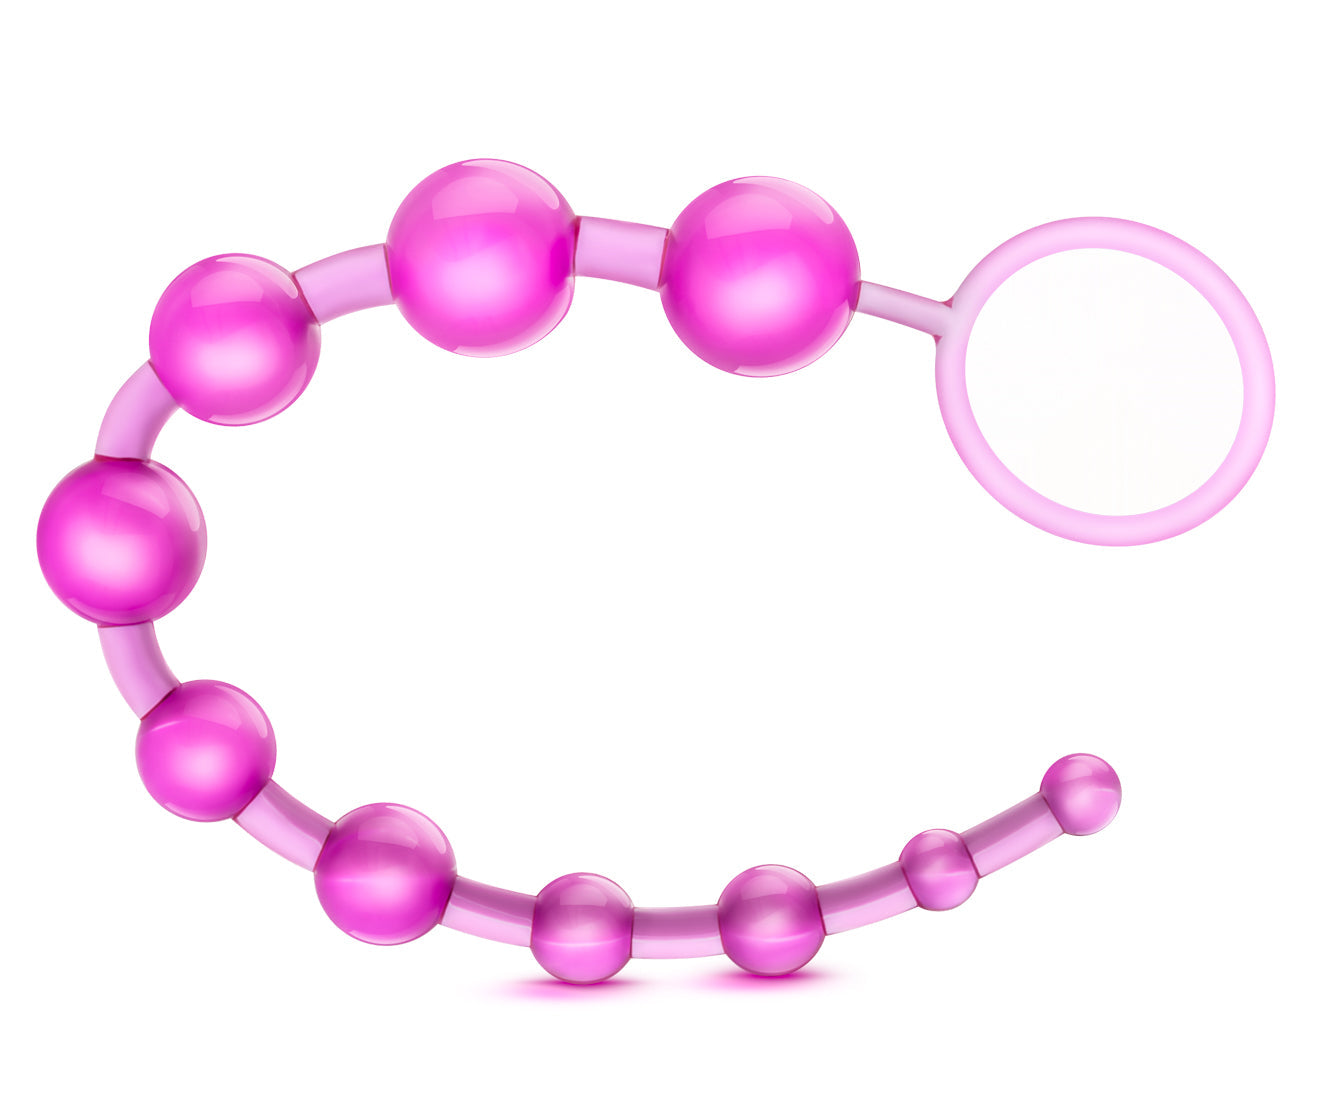 Sassy 10 Anal Beads - Pink Pink